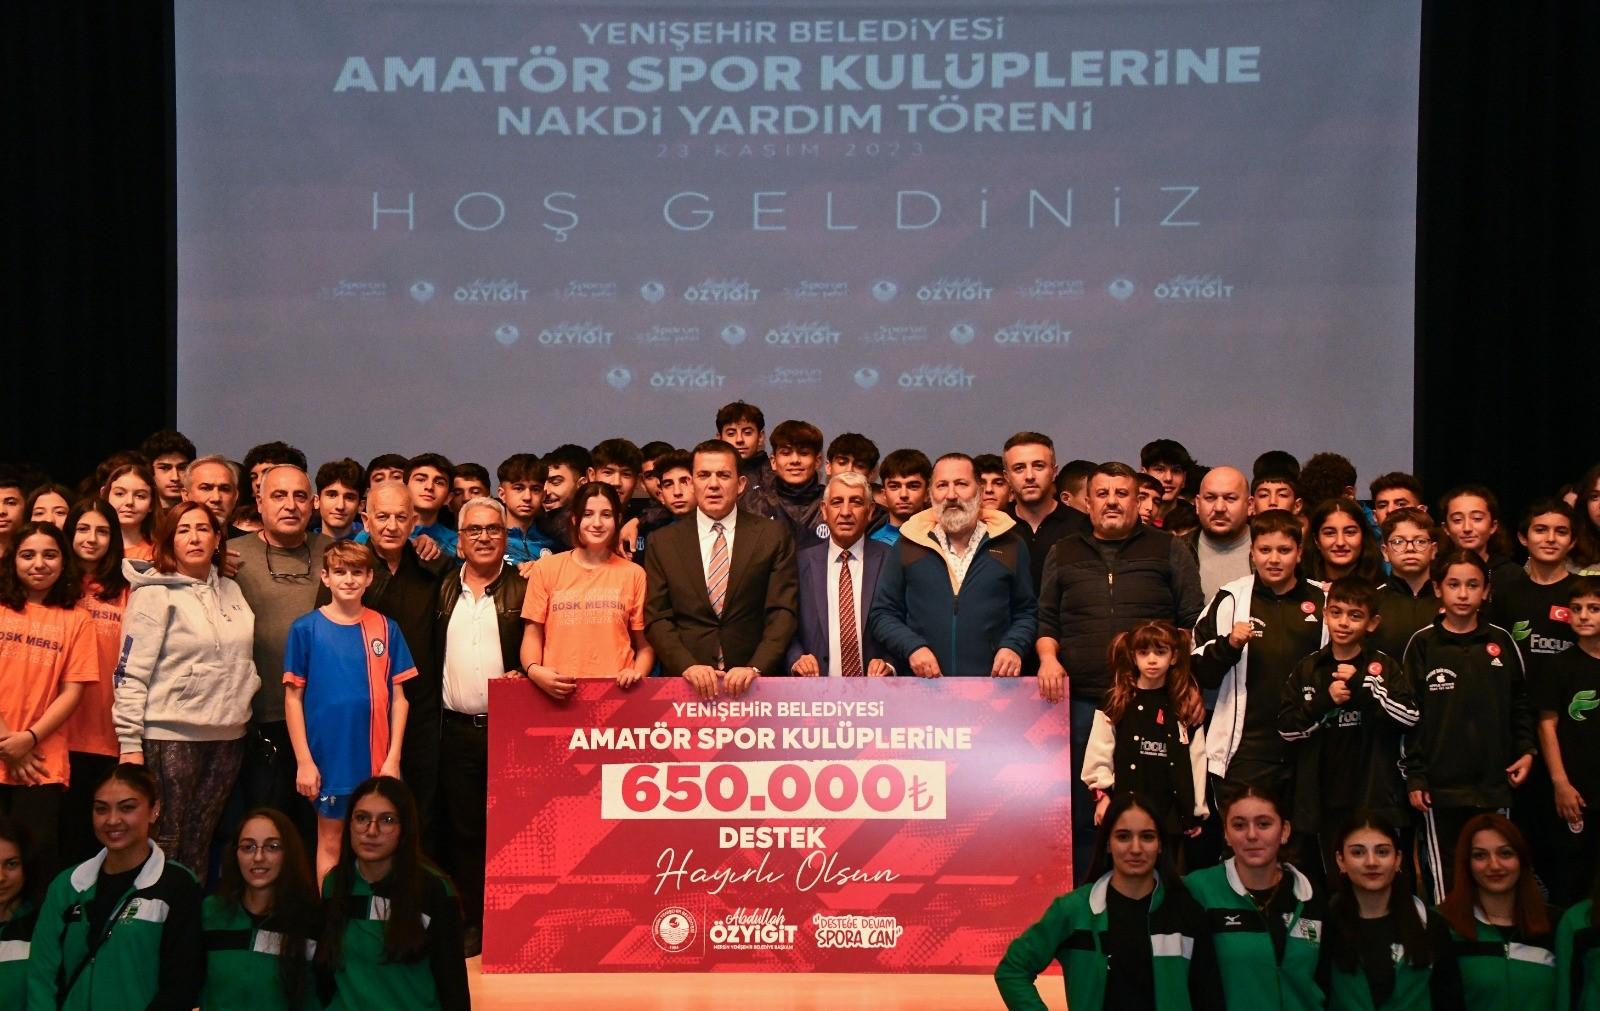  Yenişehir Belediyesinden 51 amatör spor kulübüne 650 bin TL destek